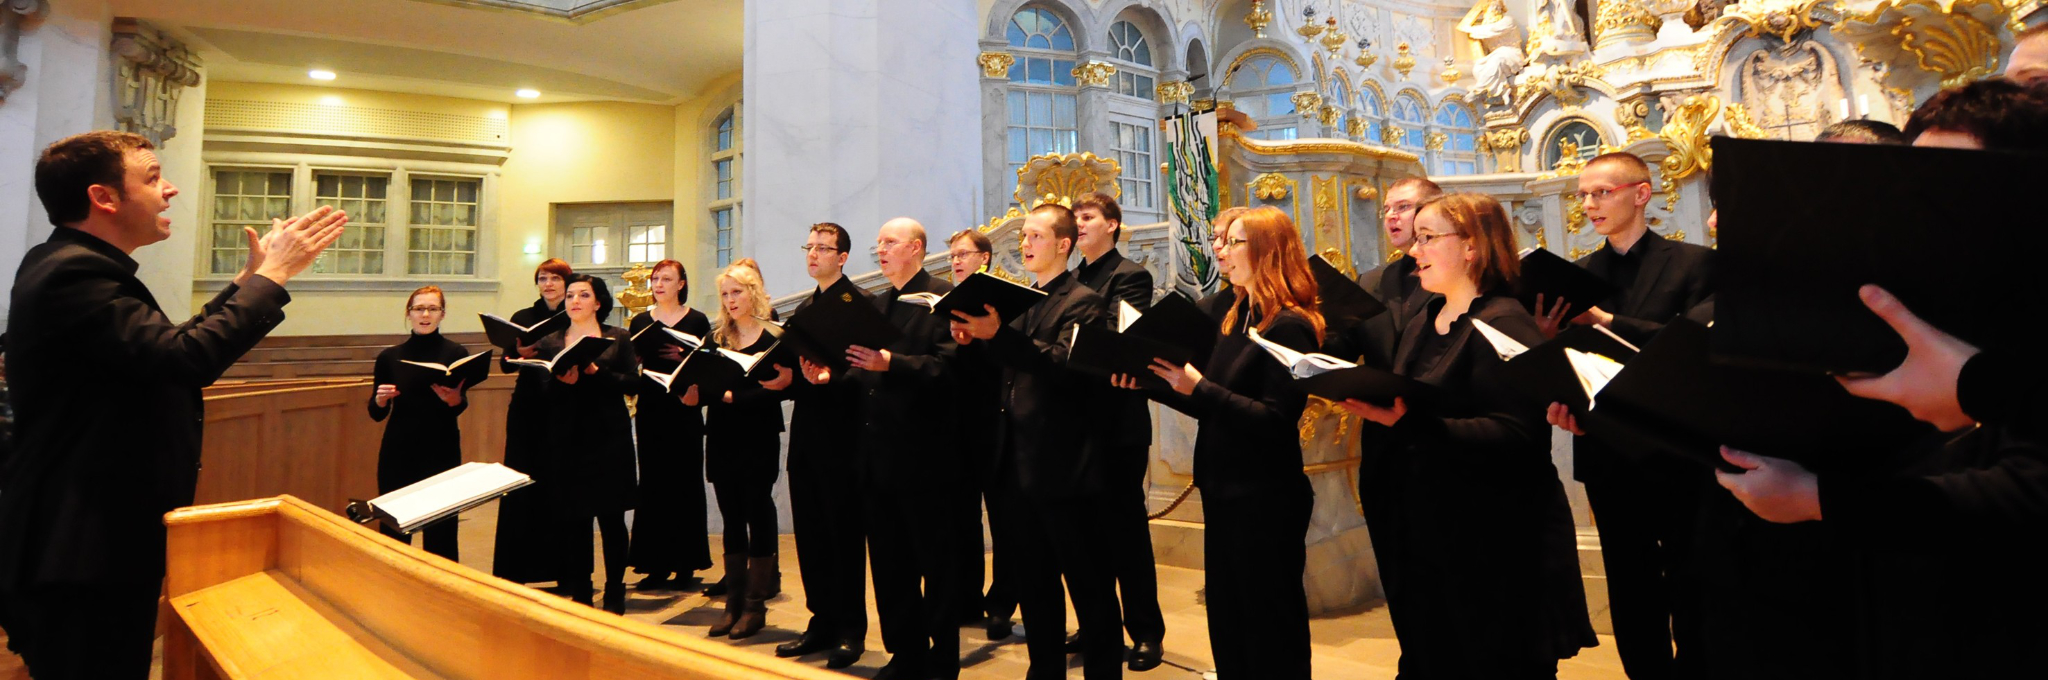 Der Kammerchor im Rahmen eines Auftritts in der Frauenkirche Dresden